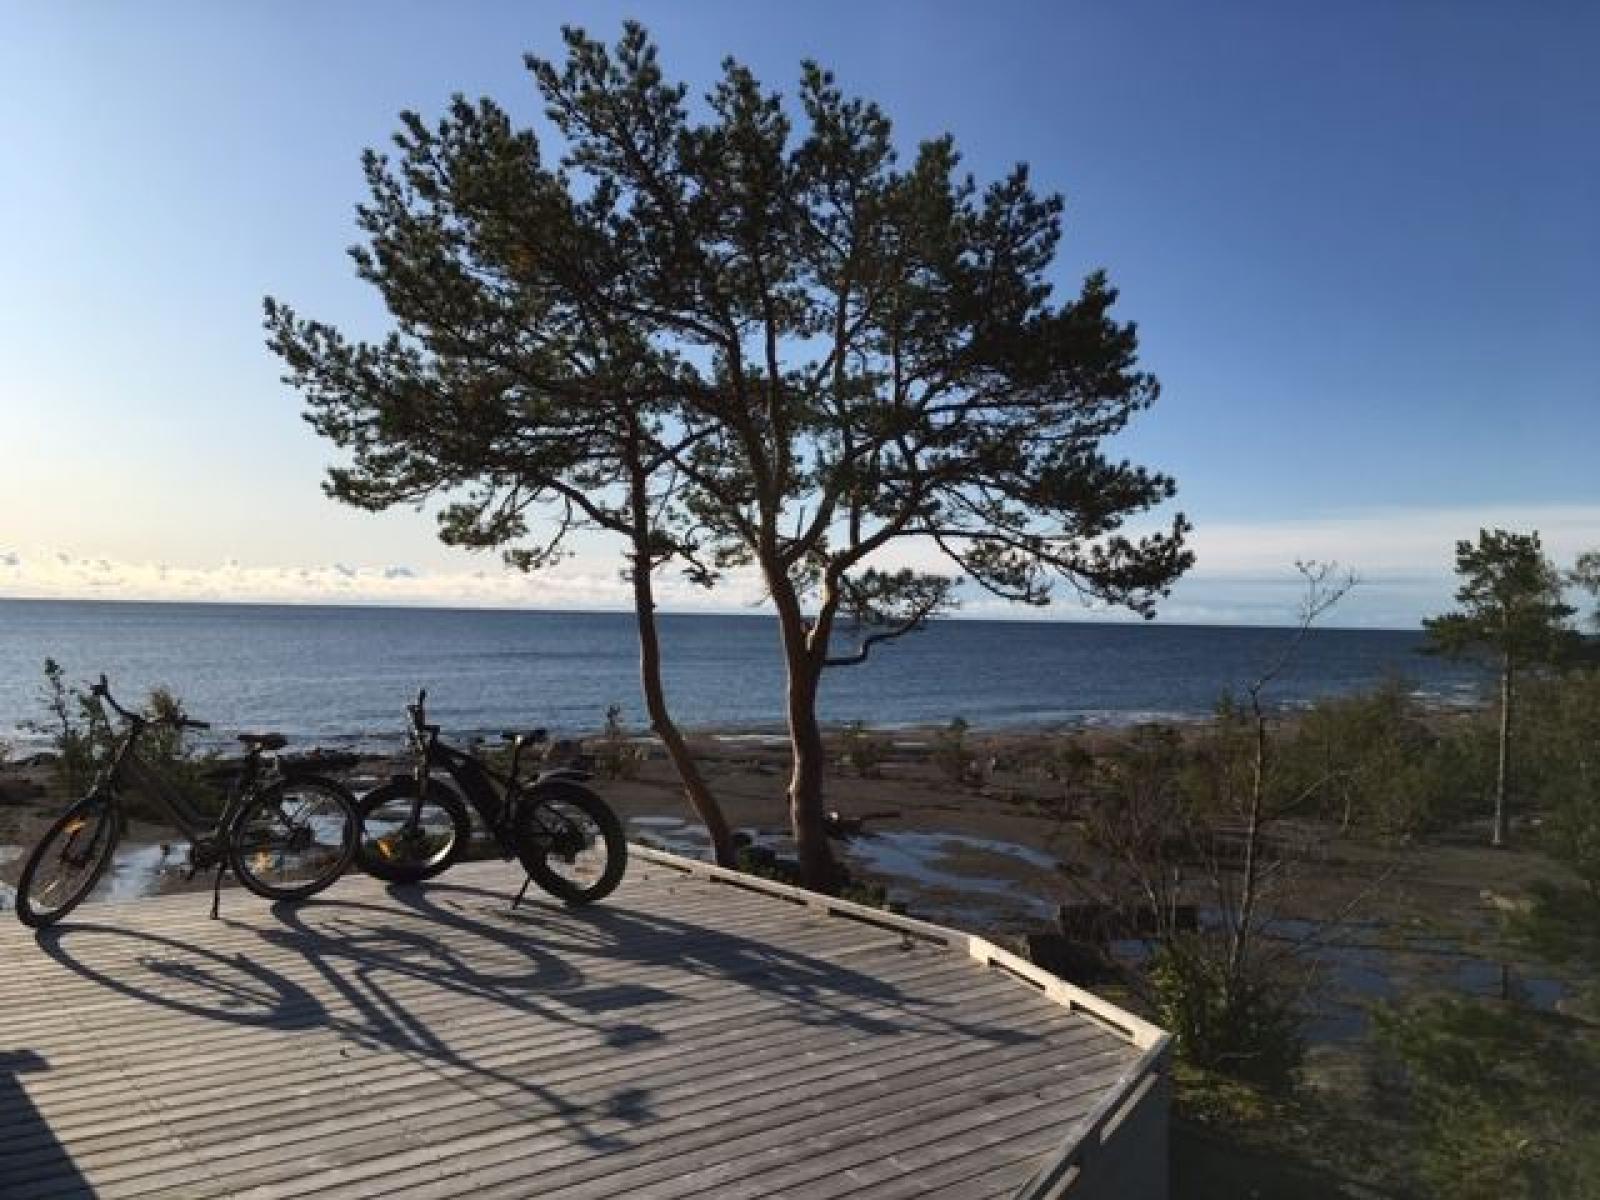 Elcykla i Nordingrå 3 dagar- Klimatsmart paket i hjärtat av världsarvet Höga Kusten